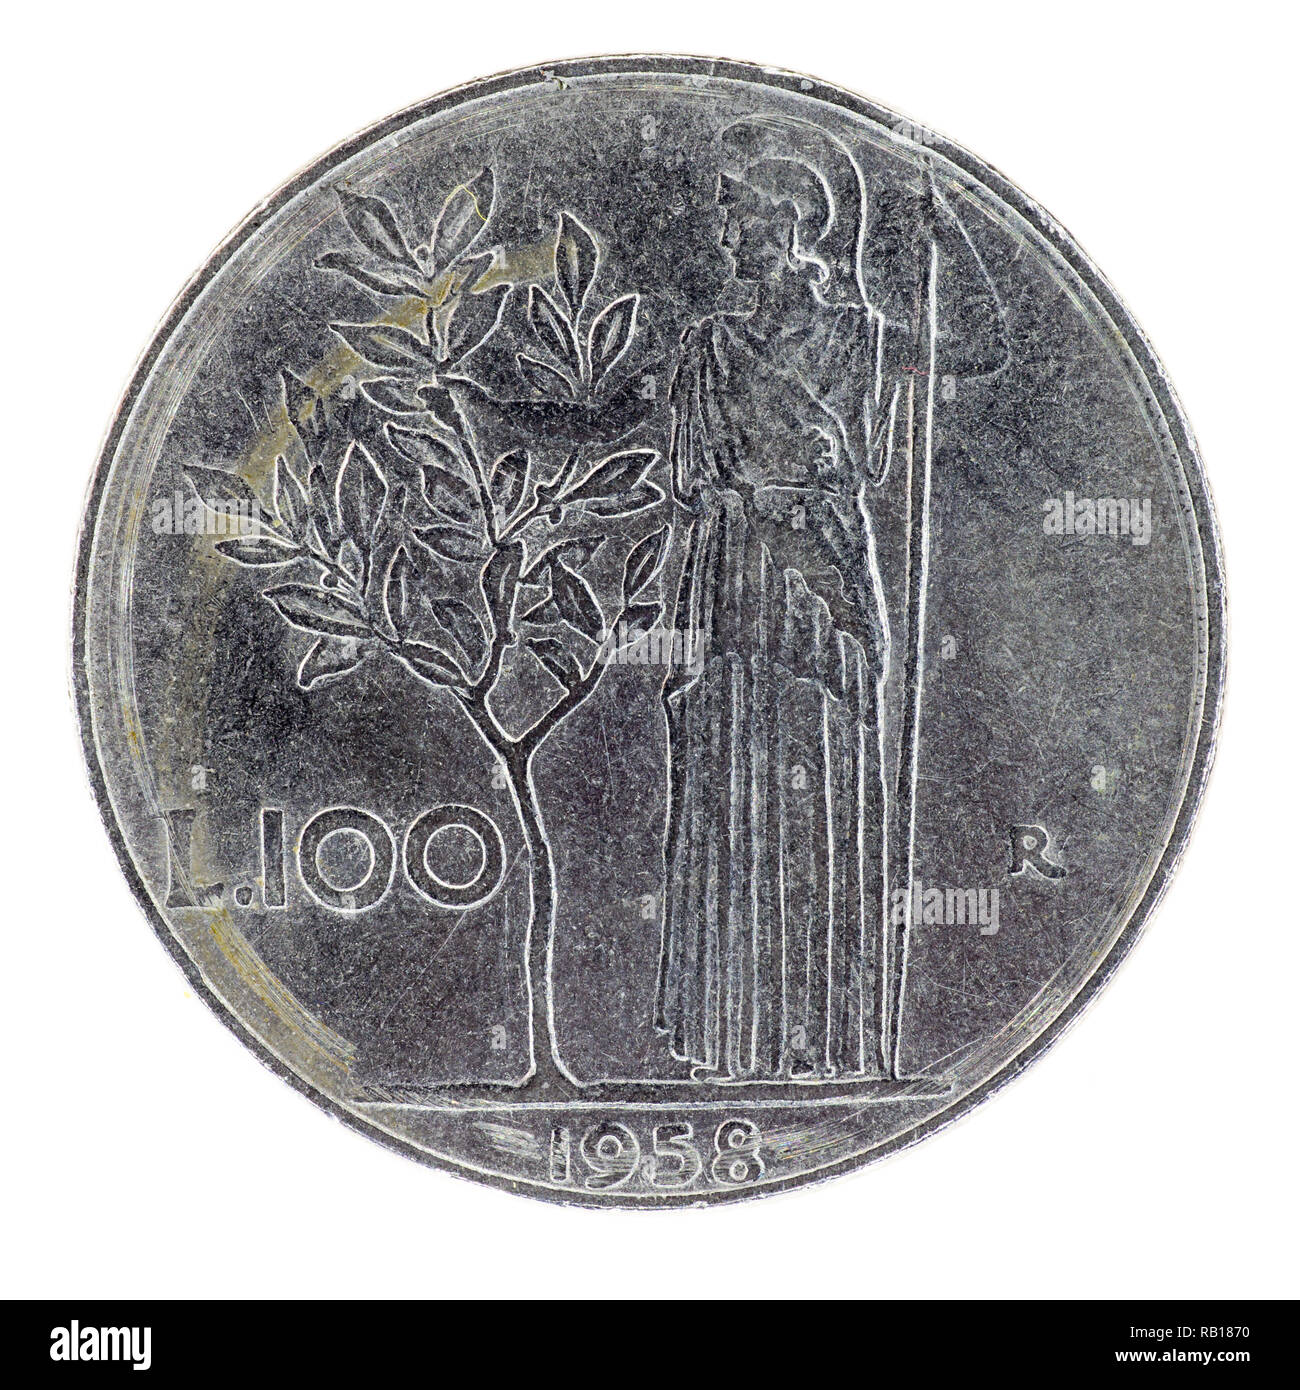 Italienische vor-Euro 100 Lira Münze datiert 1958 Stockfotografie - Alamy